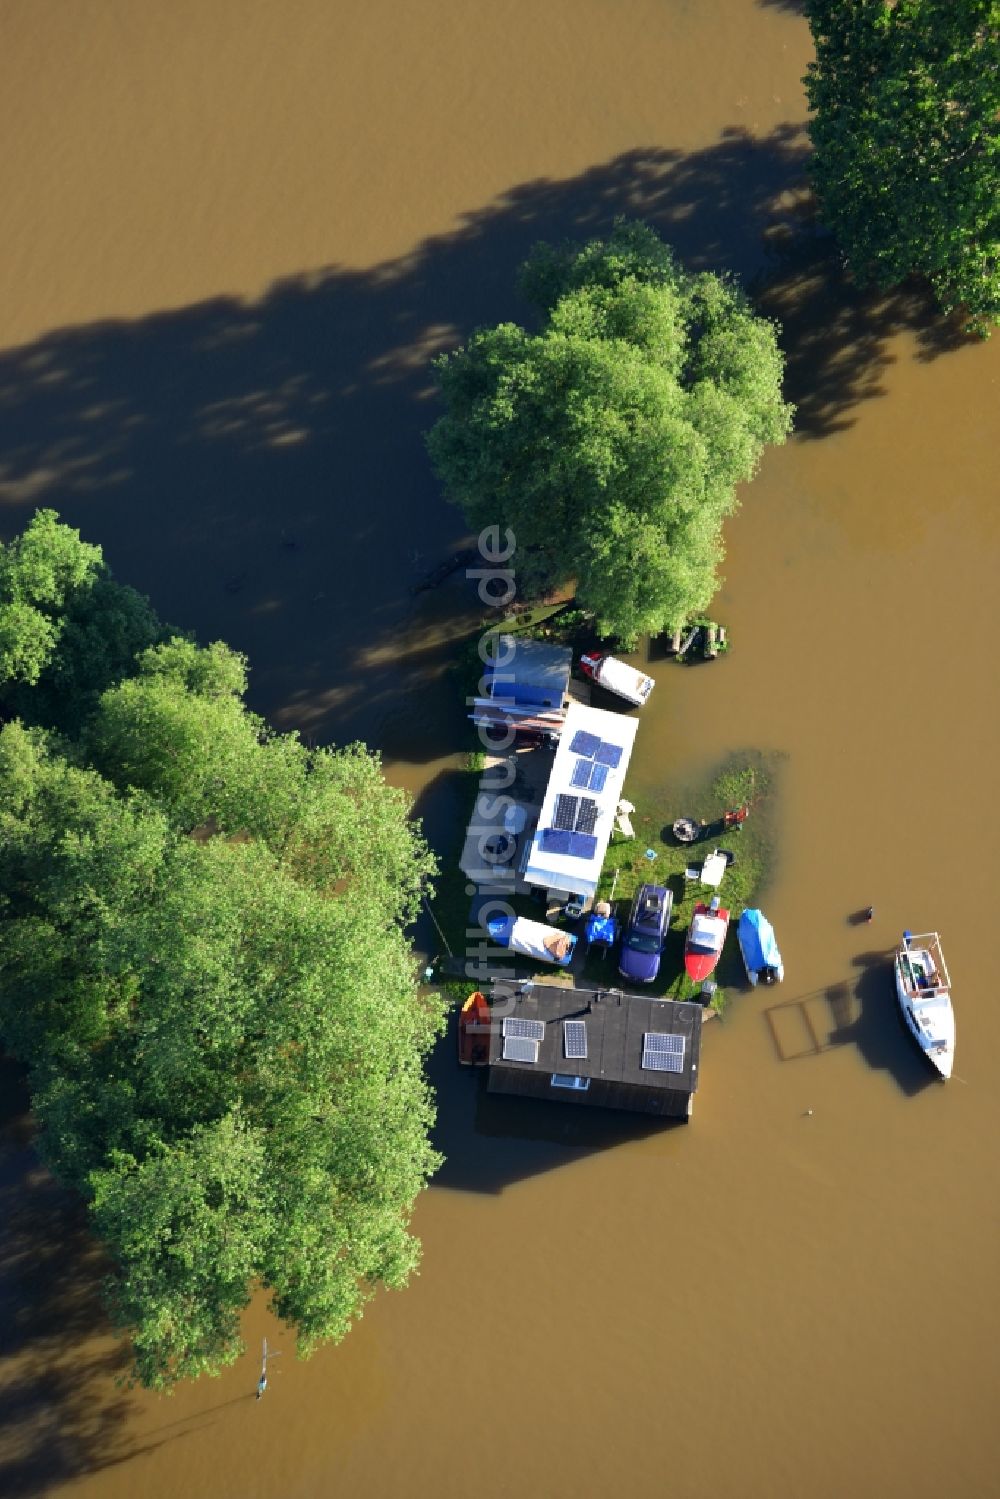 Luftbild Dessau-Roßlau - Hochwasser Pegel - Situation durch Überschwemmung und Übertritt der Ufer der Elbe bei Dessau-Roßlau im Bundesland Sachsen-Anhalt